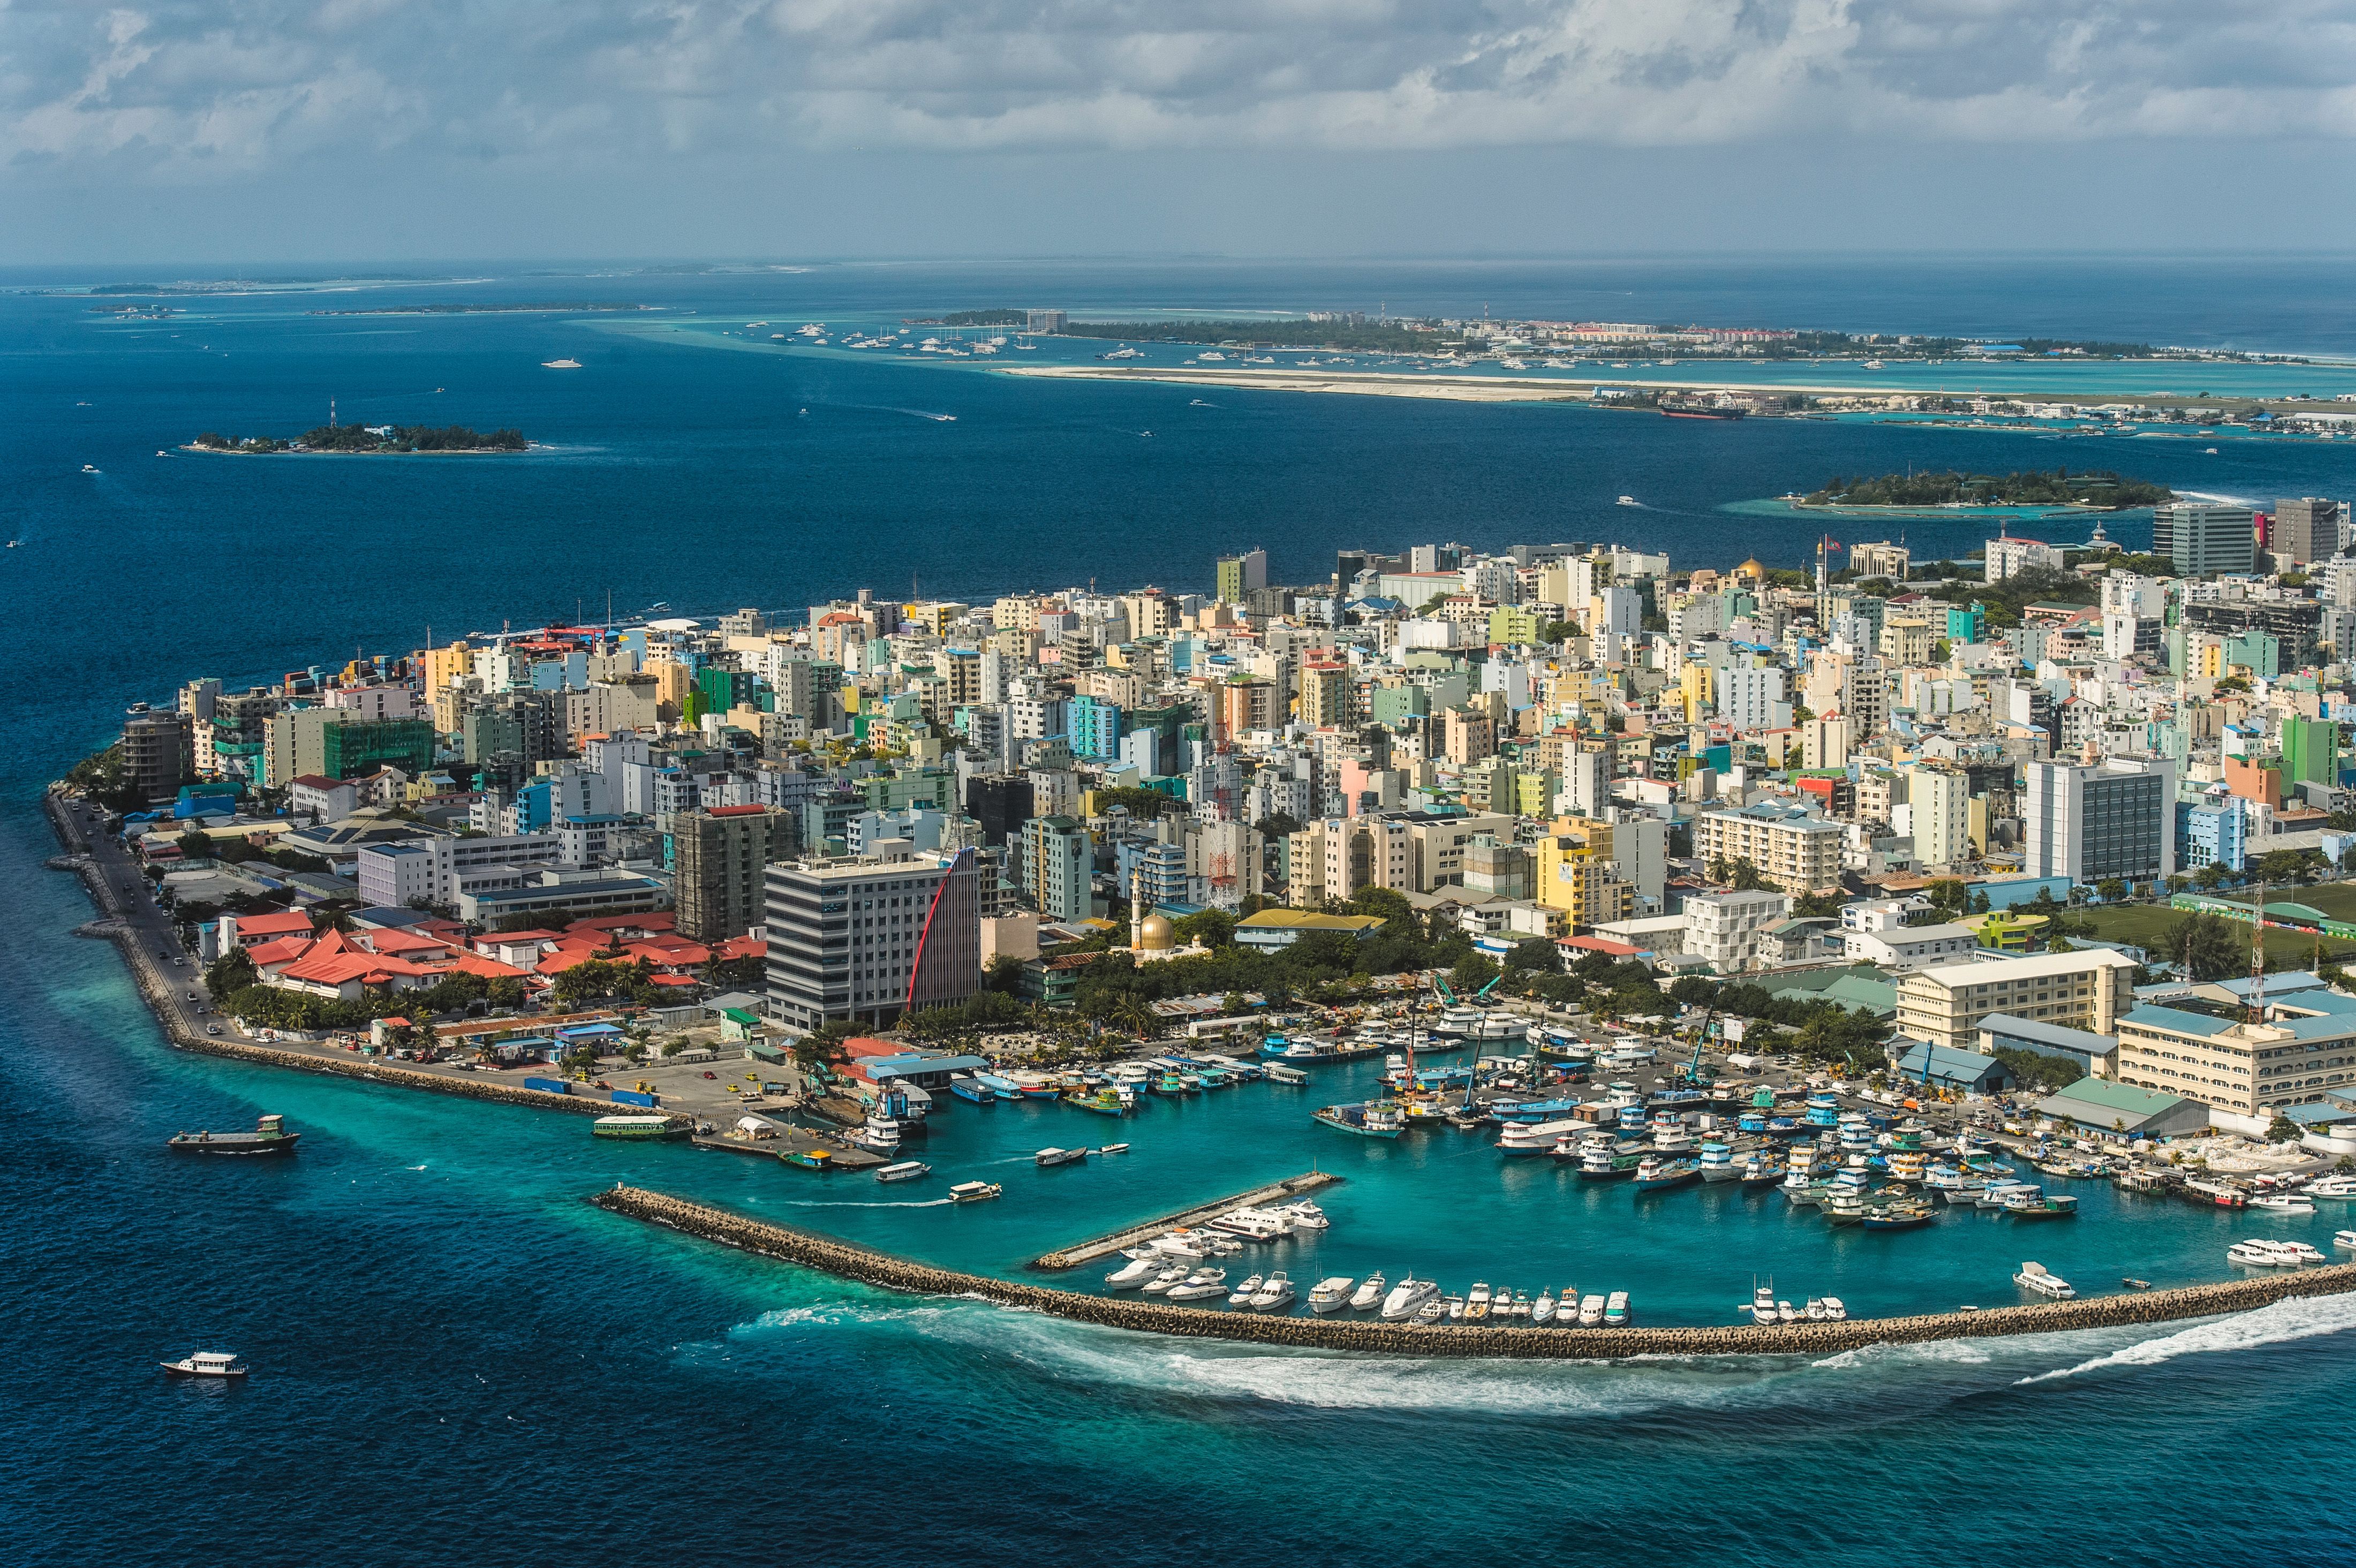 City state country. Остров Мале Мальдивы. Столица Мальдивской Республики. Столица Мальдив - город Мале.. Мале площадь острова.